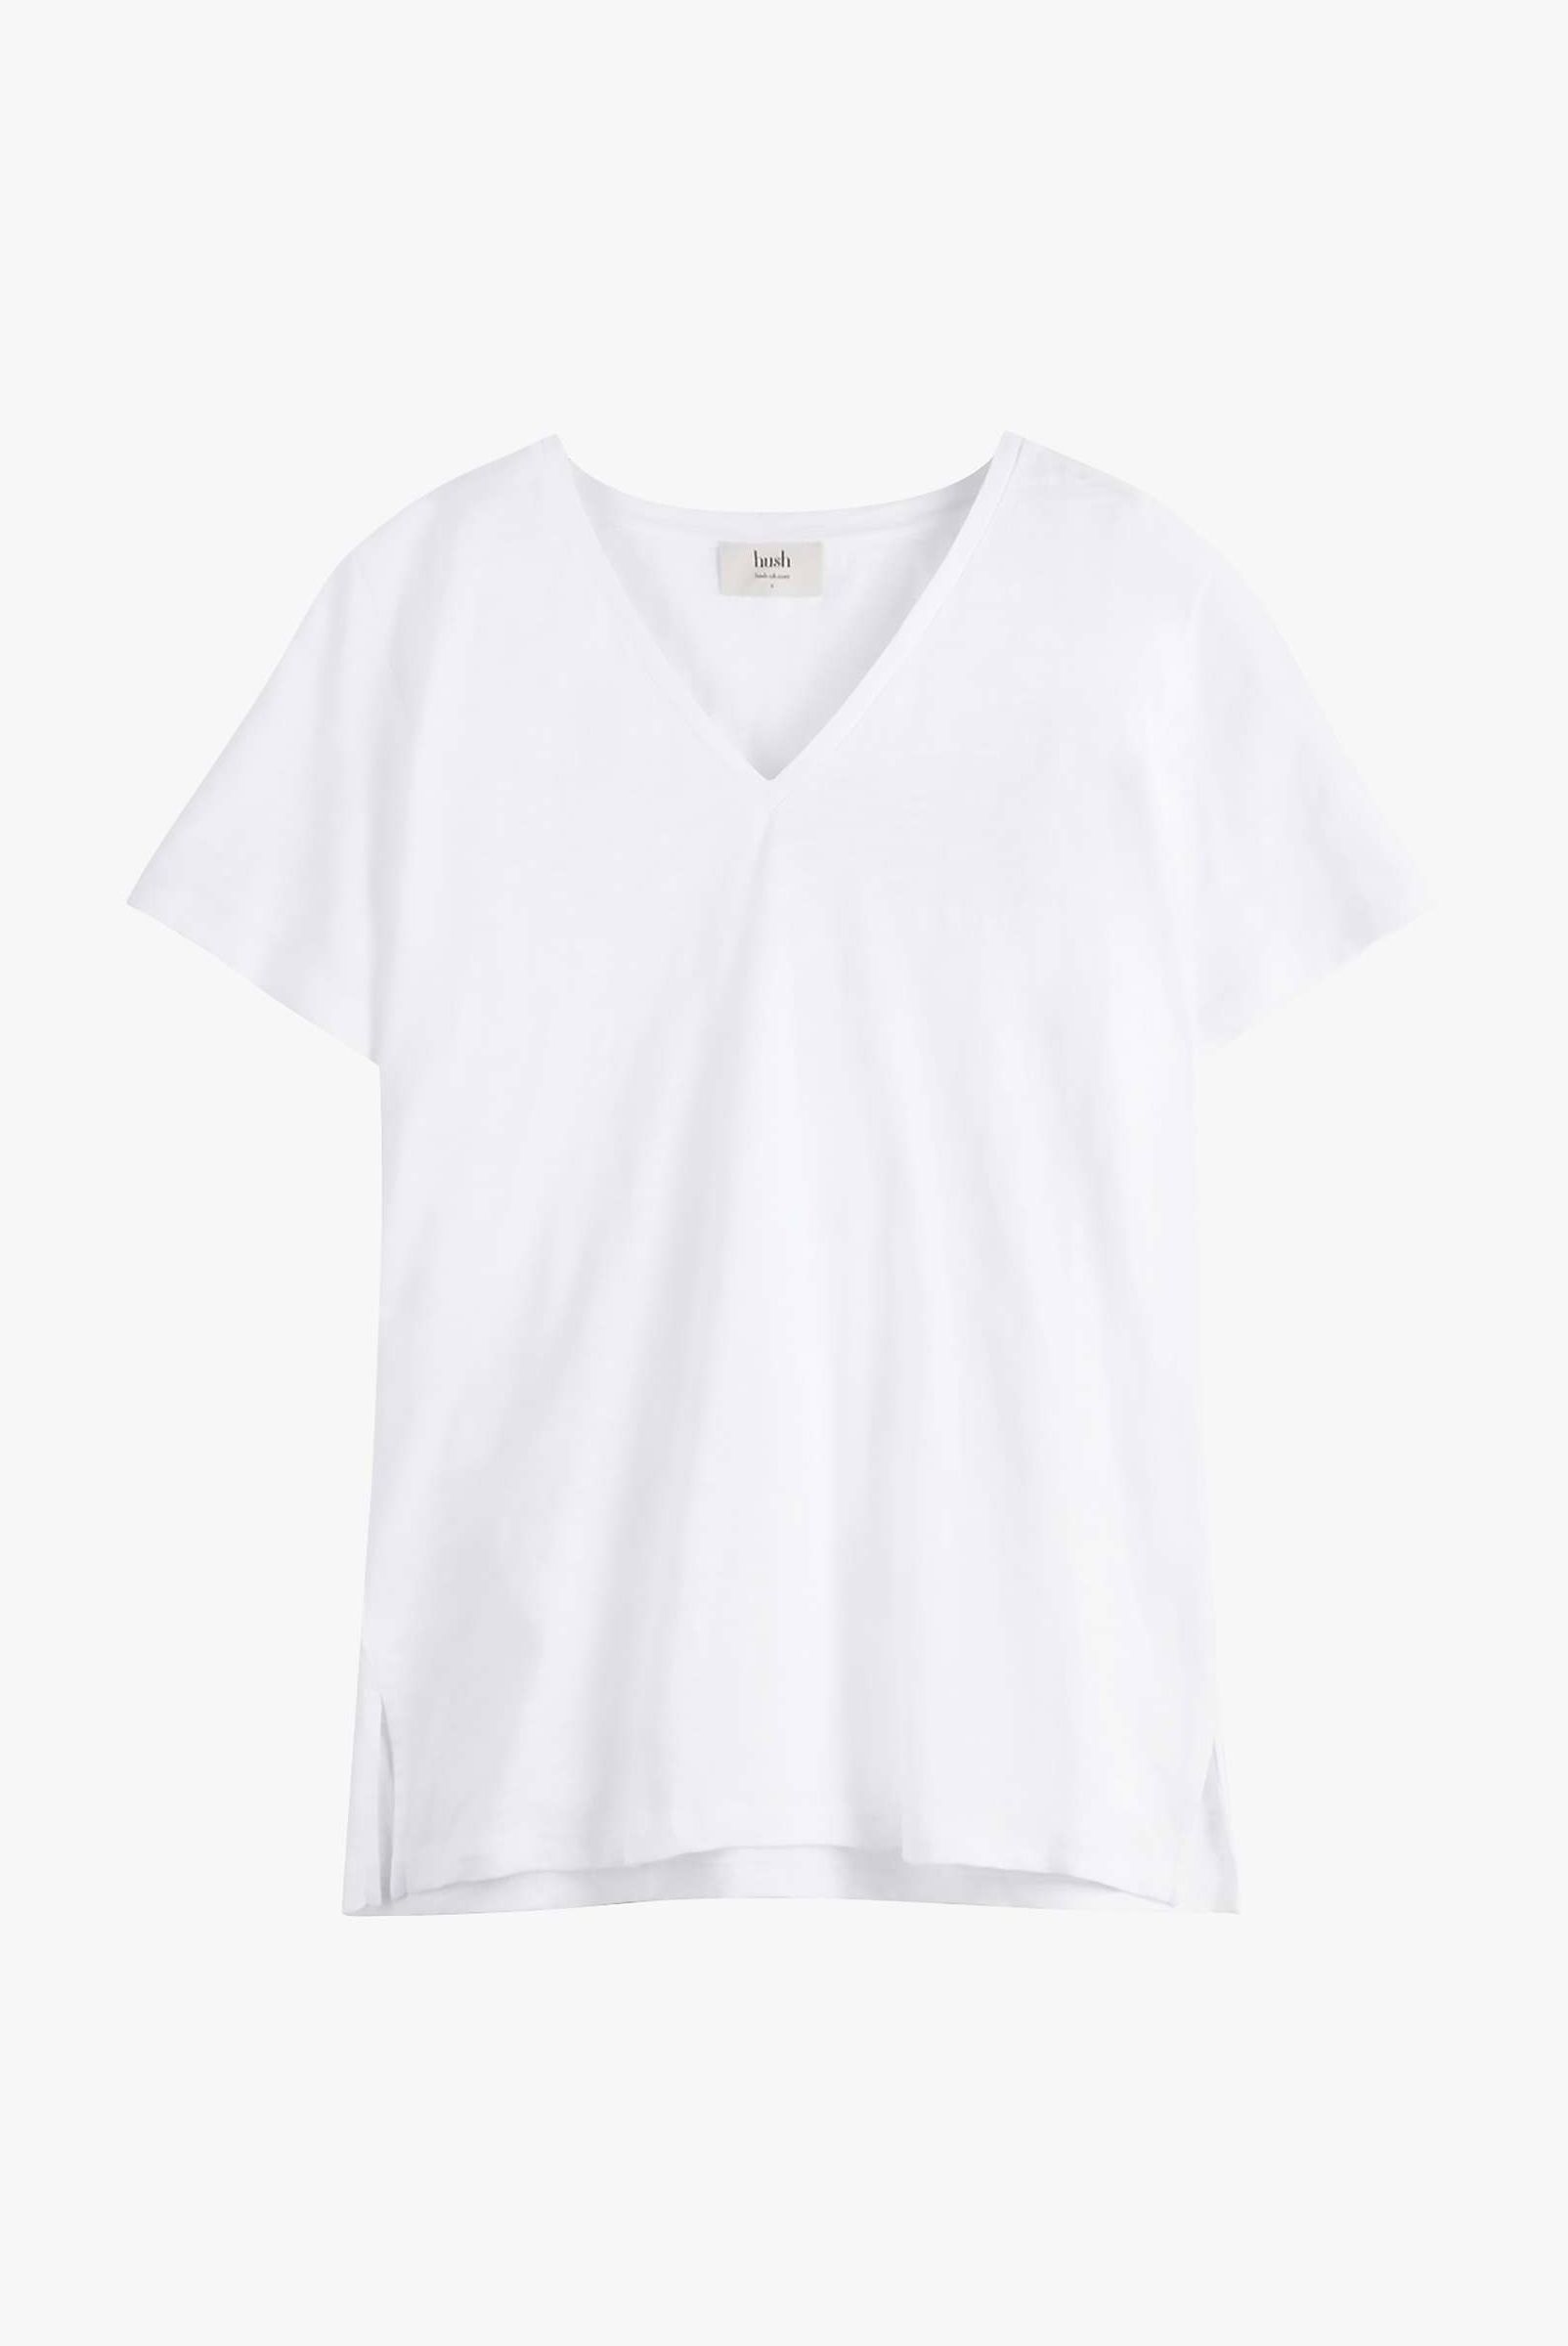 Hush Linen Blend Deep V-Neck T-Shirt in White, £35